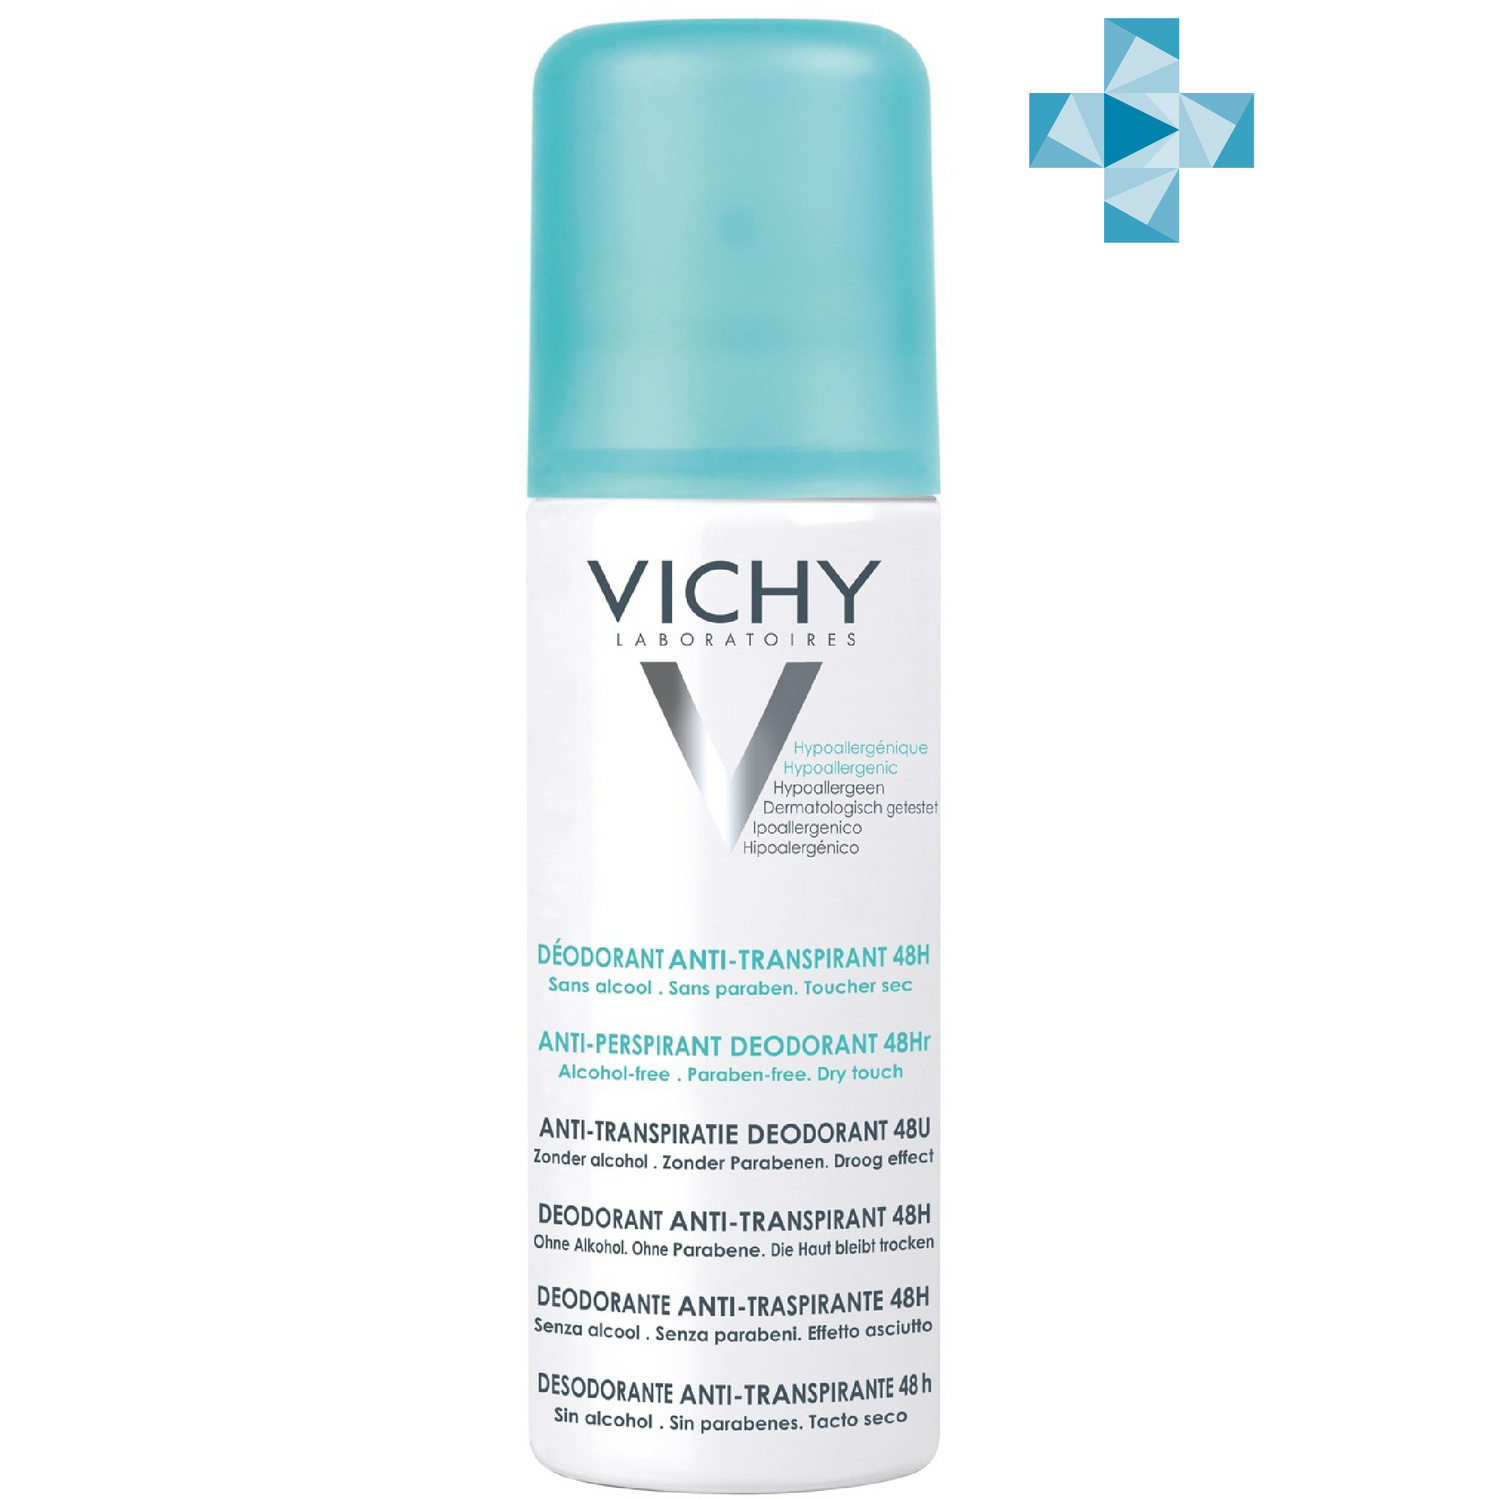 Vichy Дезодорант-аэрозоль против избыточного потоотделения 48 часов защиты, 125 мл (Vichy, Deodorant) vichy дезодорант аэрозоль против избыточного потоотделения 48 часов защиты 125 мл vichy deodorant